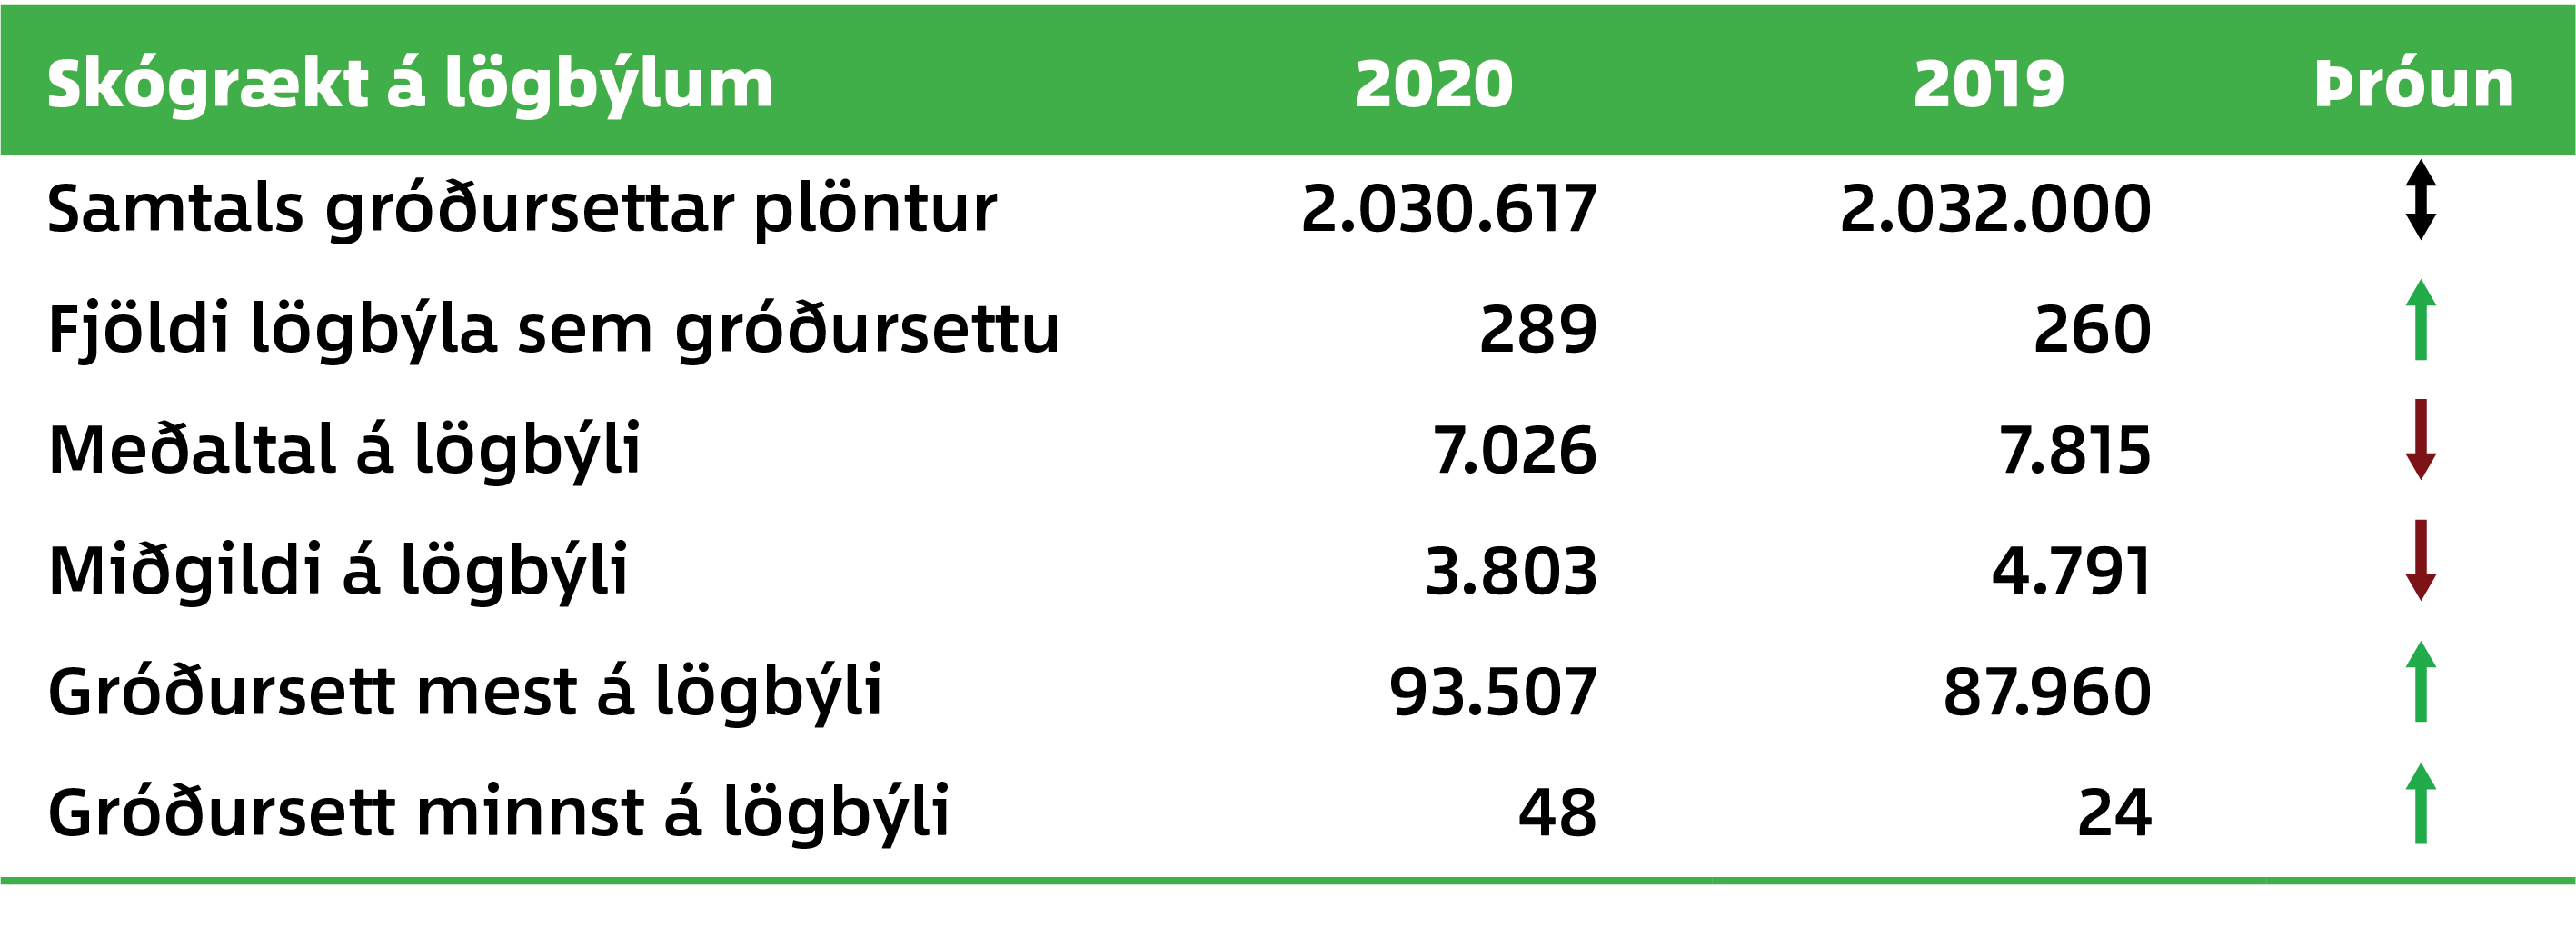 Fjöldi gróðursettra plantna á lögbýlum 2020